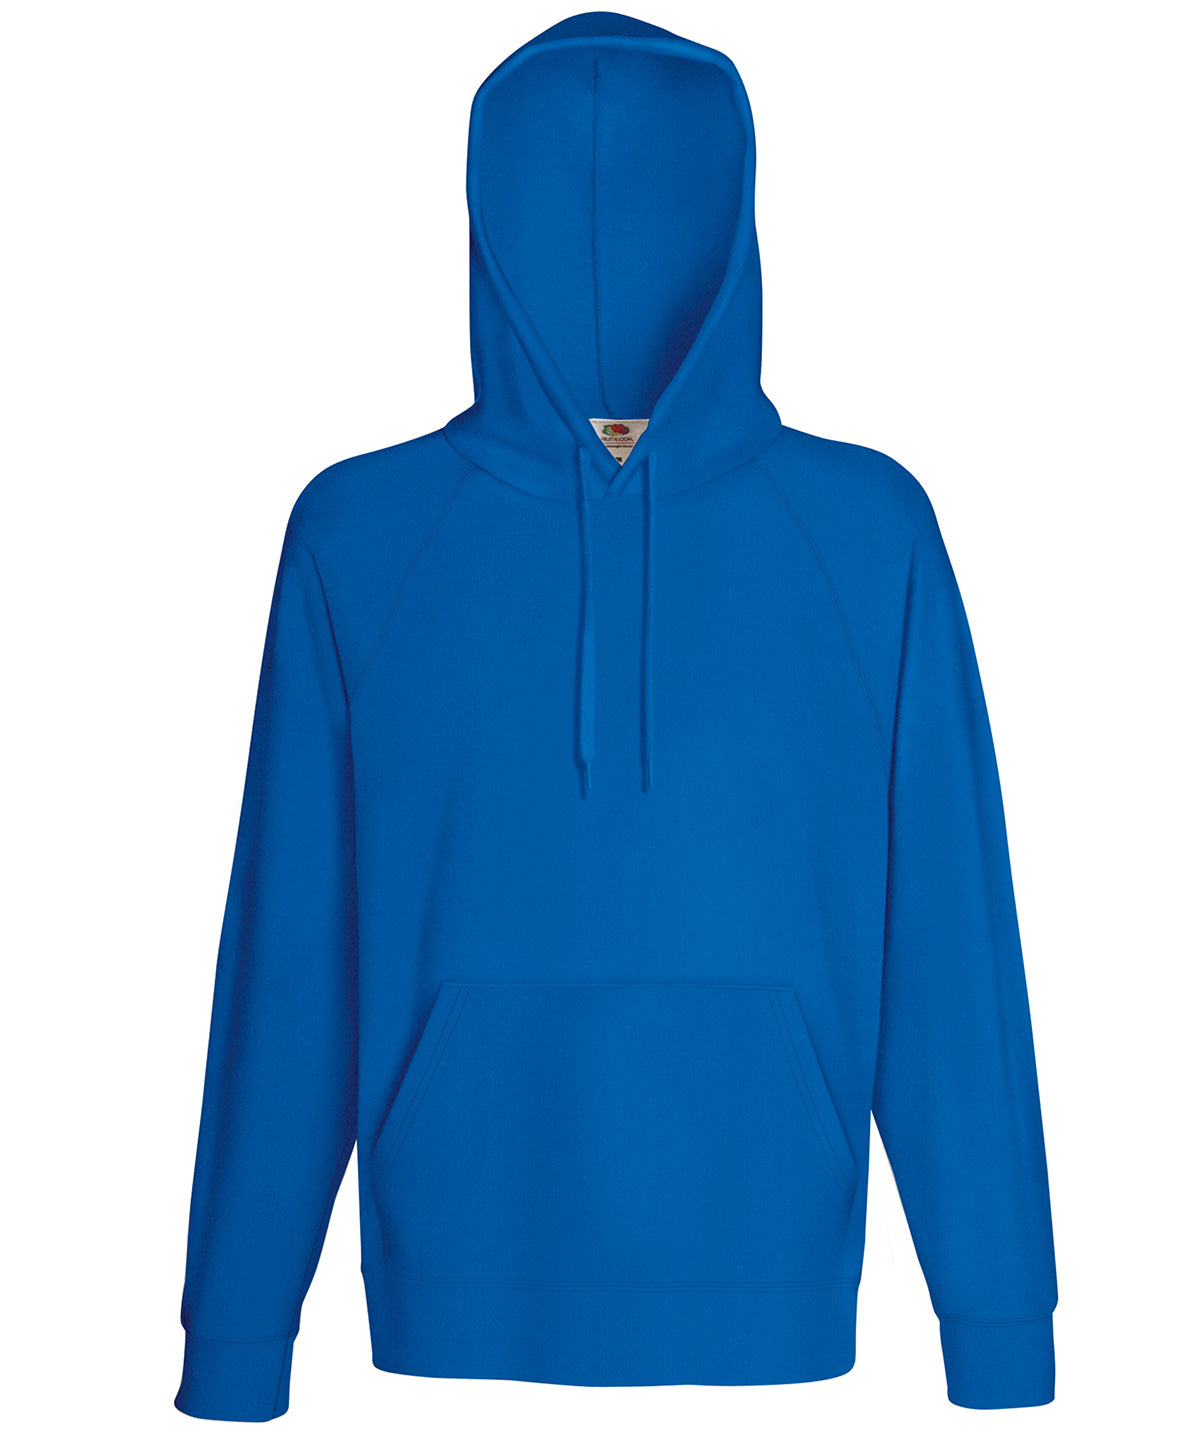 Personalised Hoodies - Bottle Fruit of the Loom Lightweight hooded sweatshirt